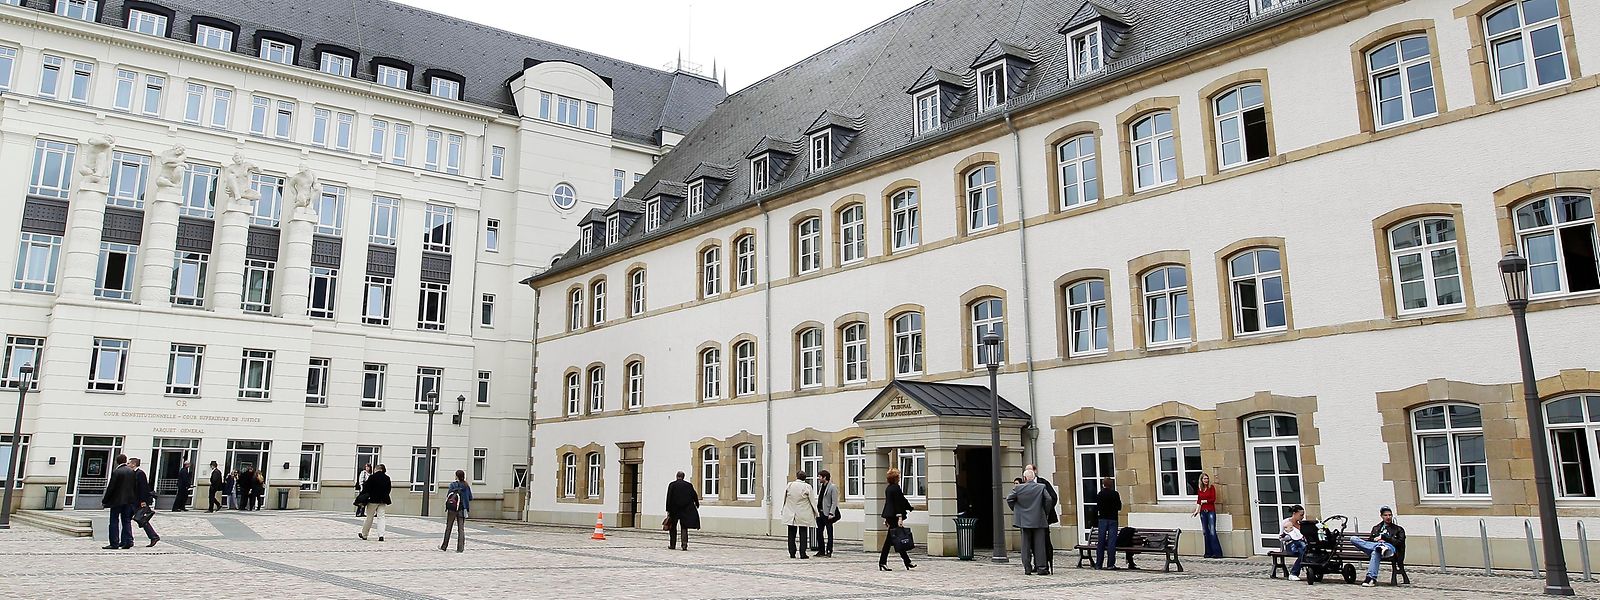 Au Luxembourg, certaines préoccupations existent notamment en ce qui concerne les retards dans le traitement des demandes d'accès aux documents détenus par les autorités publiques.